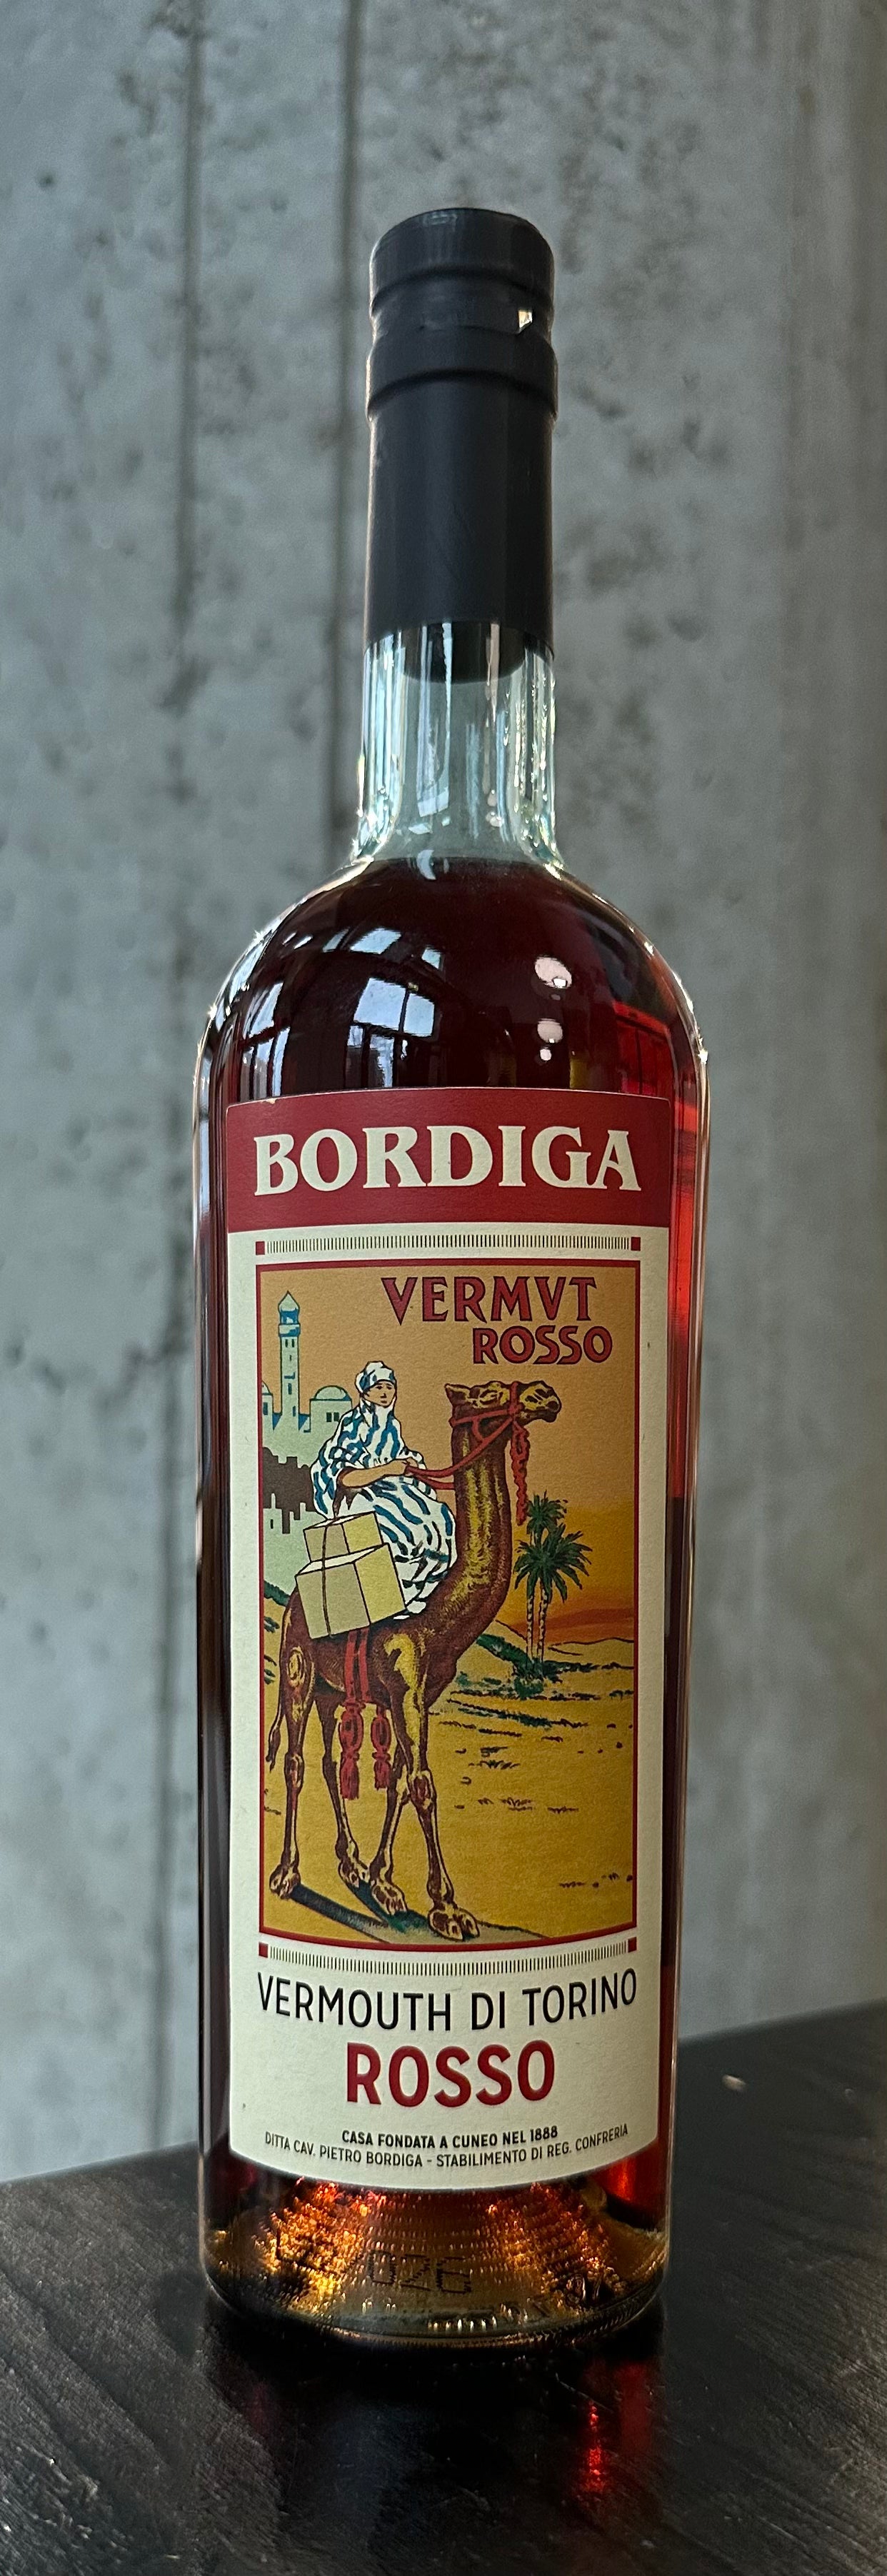 Bordiga Vermouth di Torino Rosso